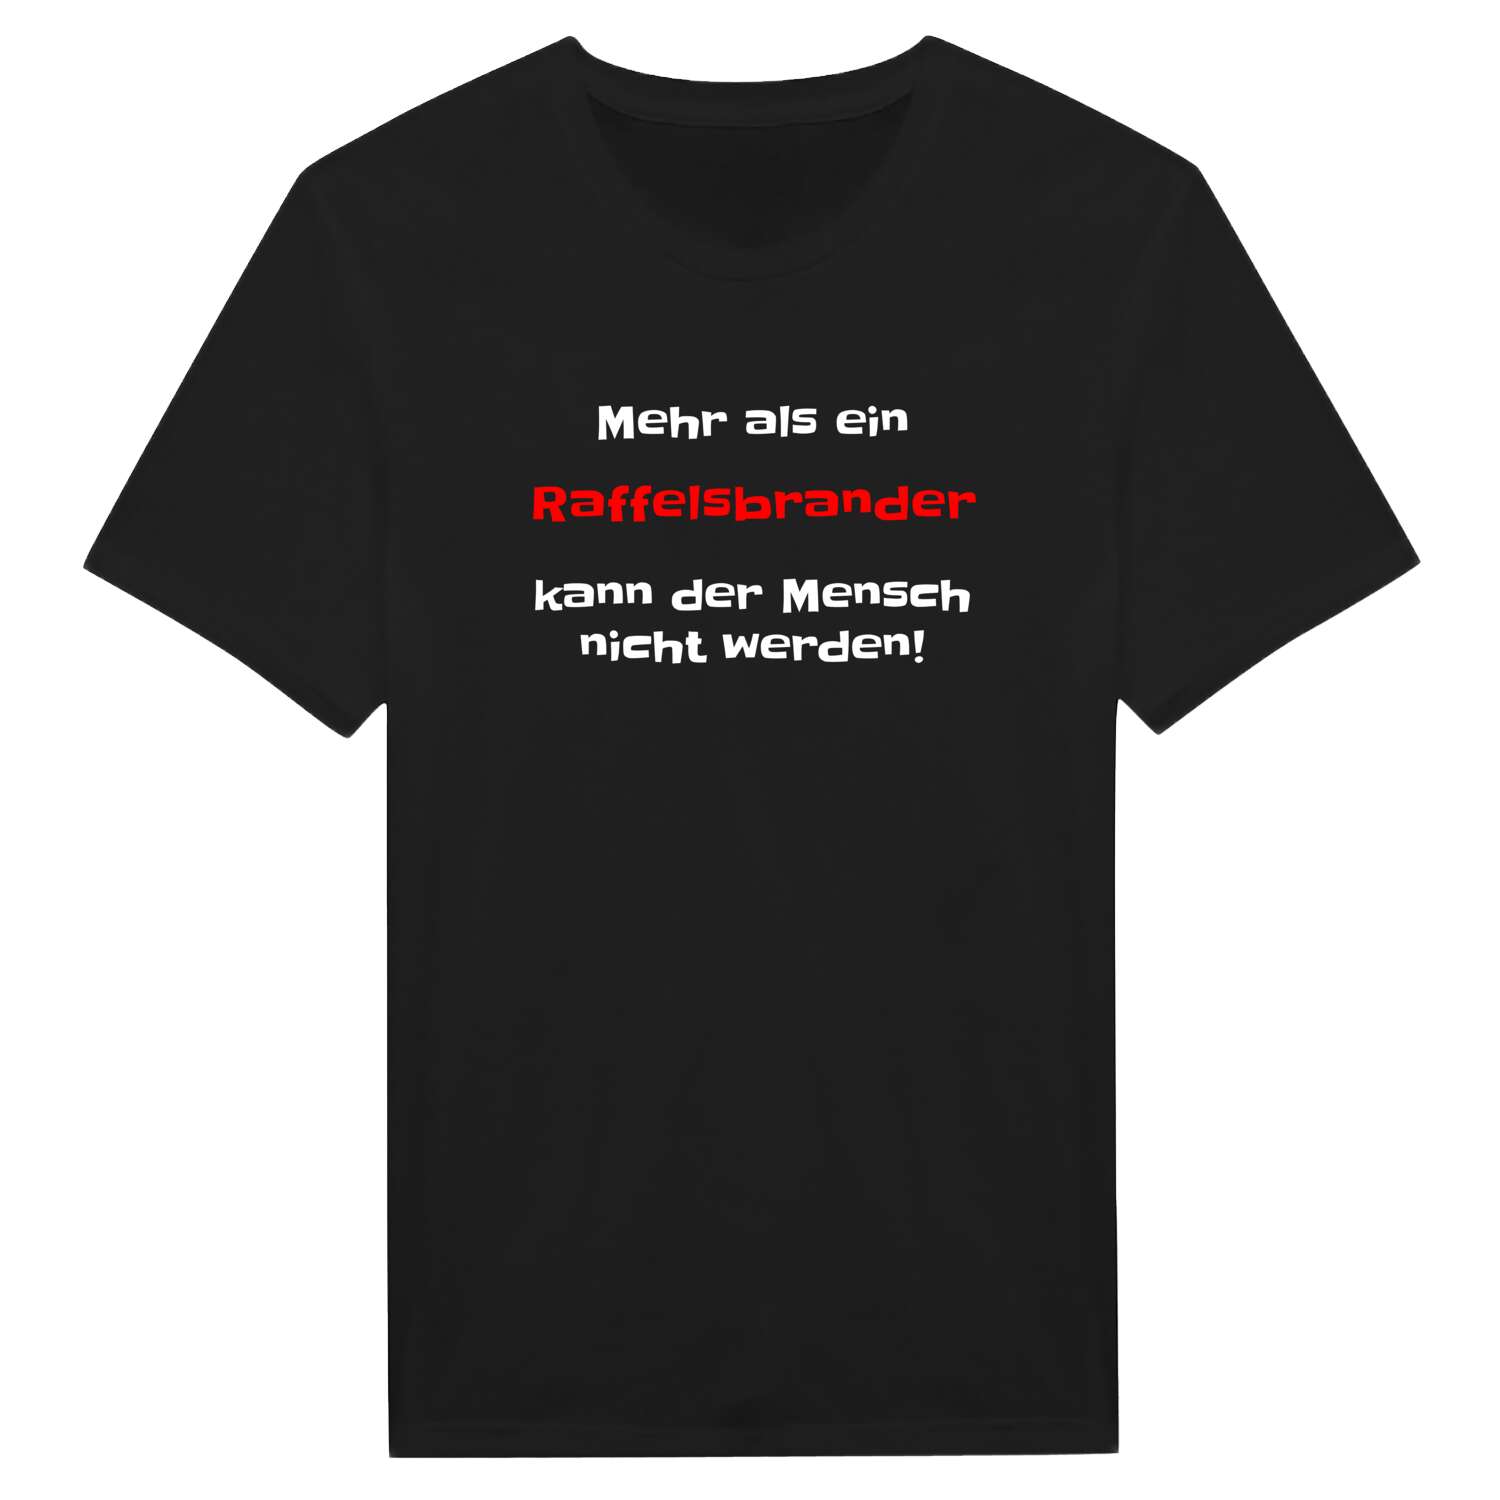 Raffelsbrand T-Shirt »Mehr als ein«